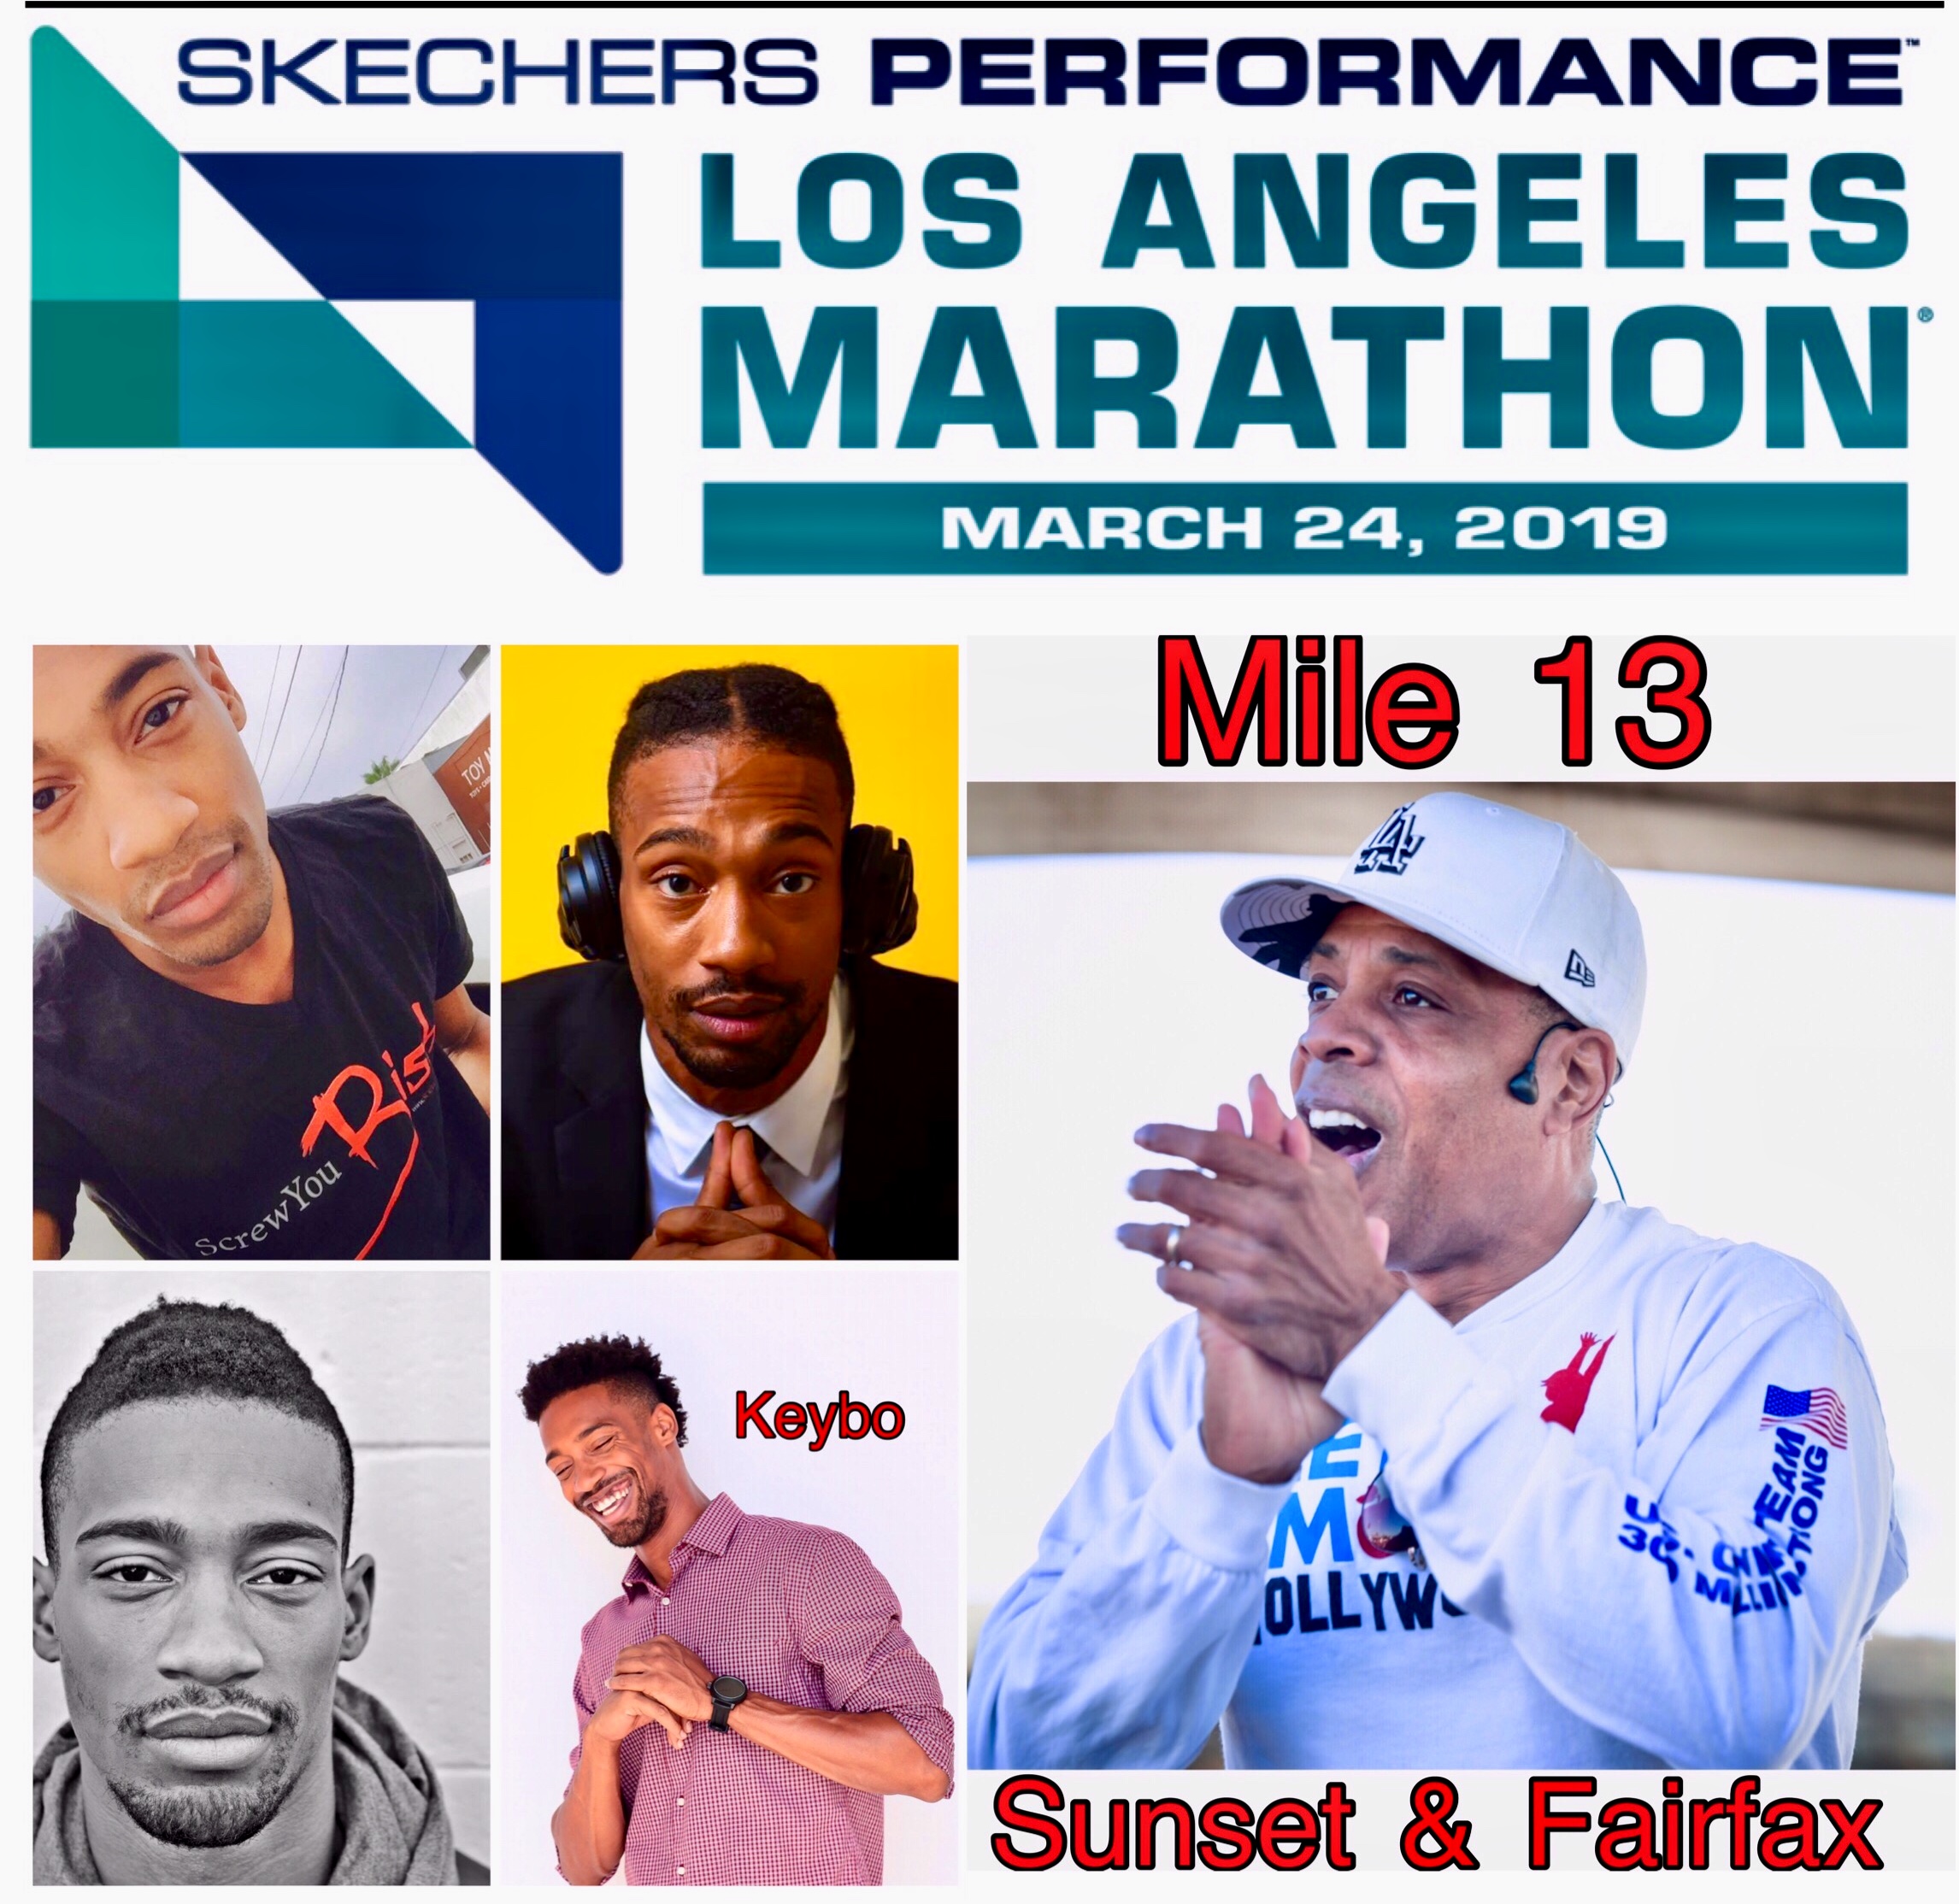 The 2019 LA Marathon “13 Mile” Party on Sunset & Fairfax Ave.